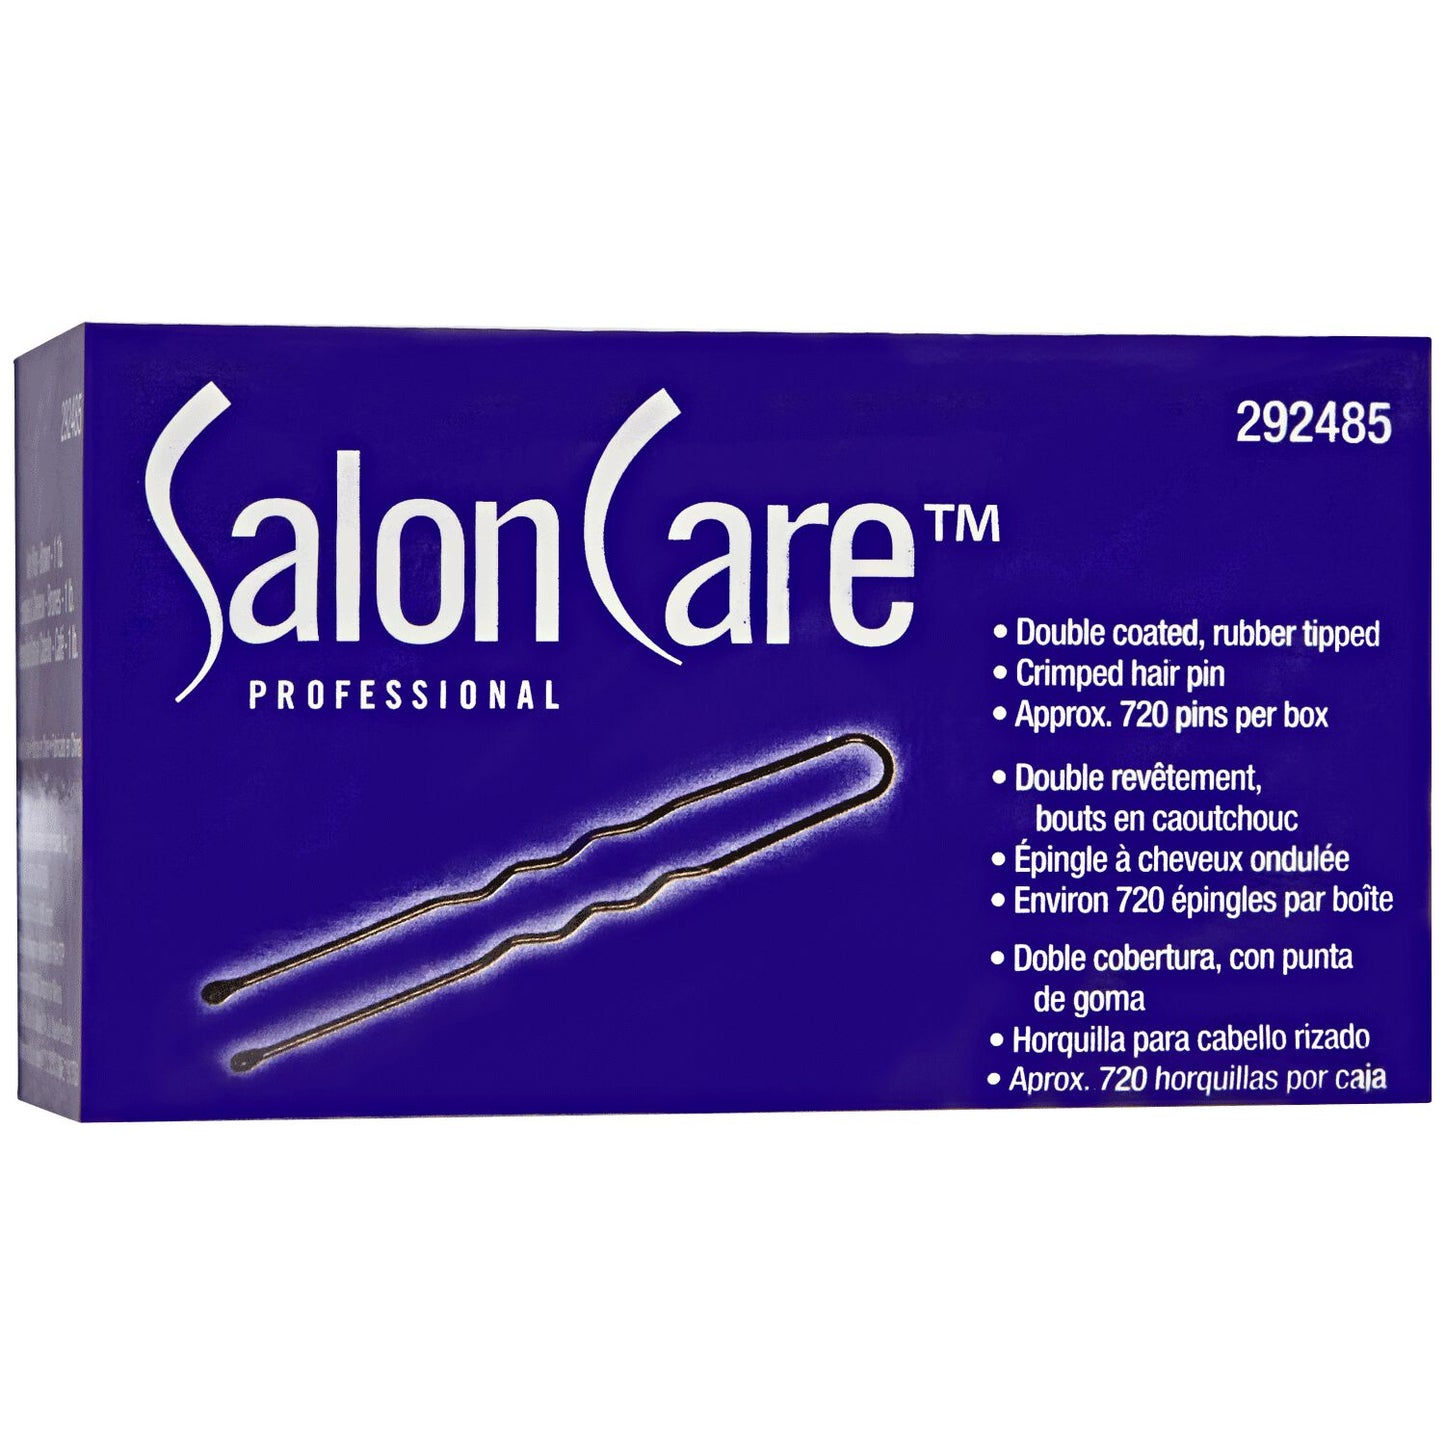 Salon Care Brown Professional Hair Pins